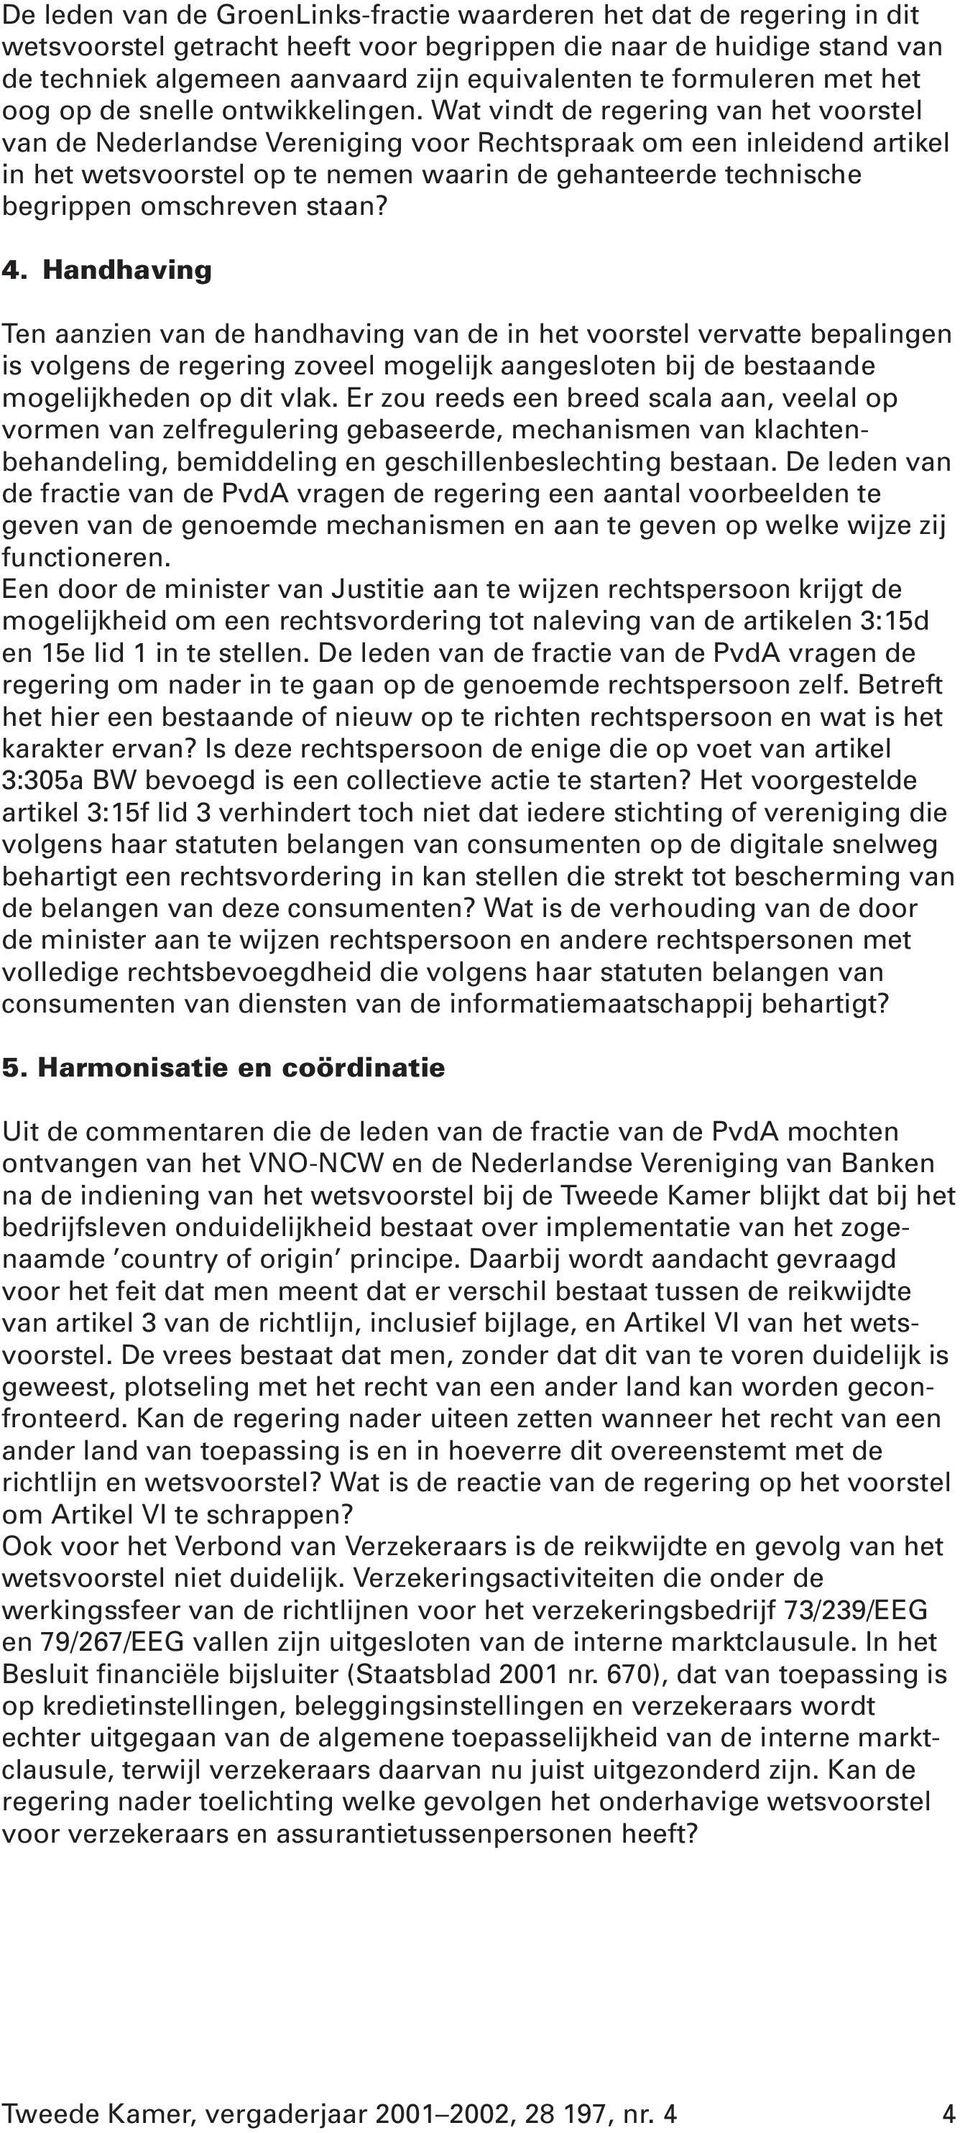 Wat vindt de regering van het voorstel van de Nederlandse Vereniging voor Rechtspraak om een inleidend artikel in het wetsvoorstel op te nemen waarin de gehanteerde technische begrippen omschreven